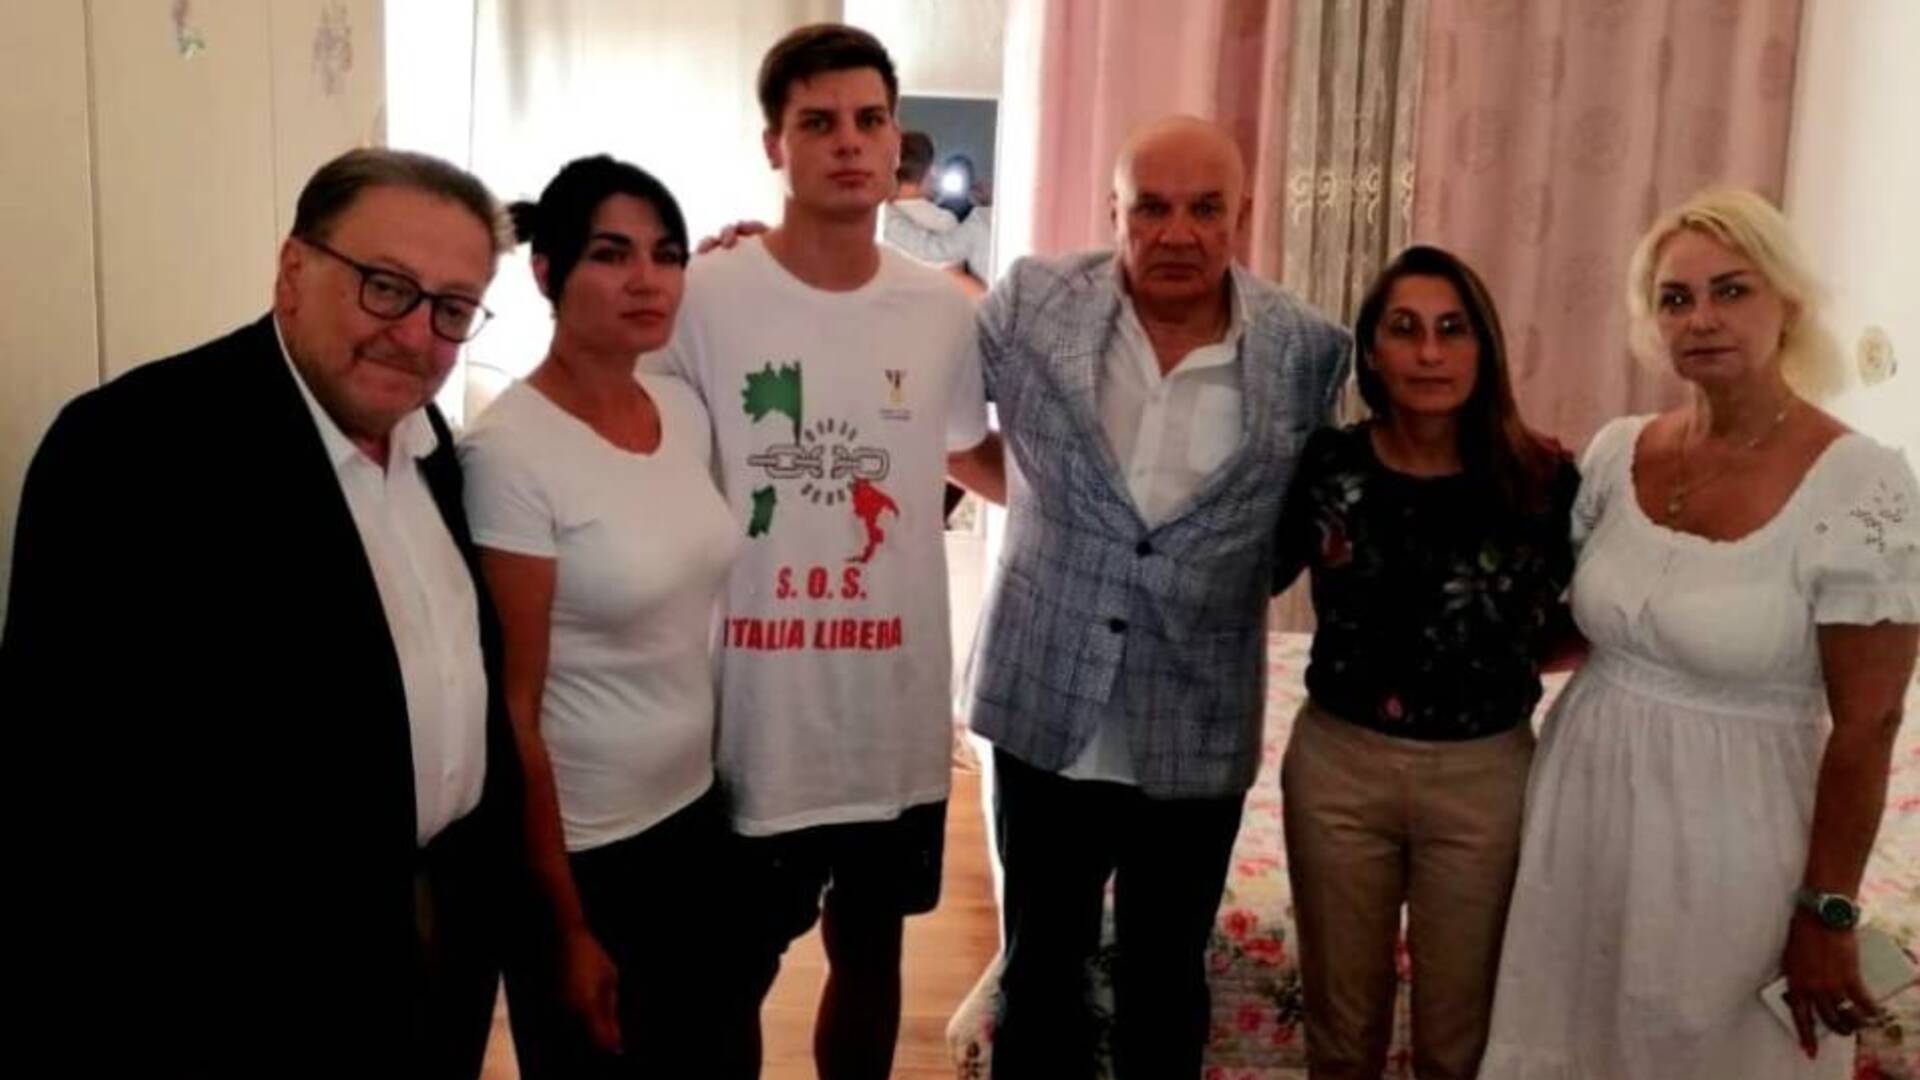 Saronno, Sos Italia libera parte civile al processo contro chi ha sfregiato Danylo